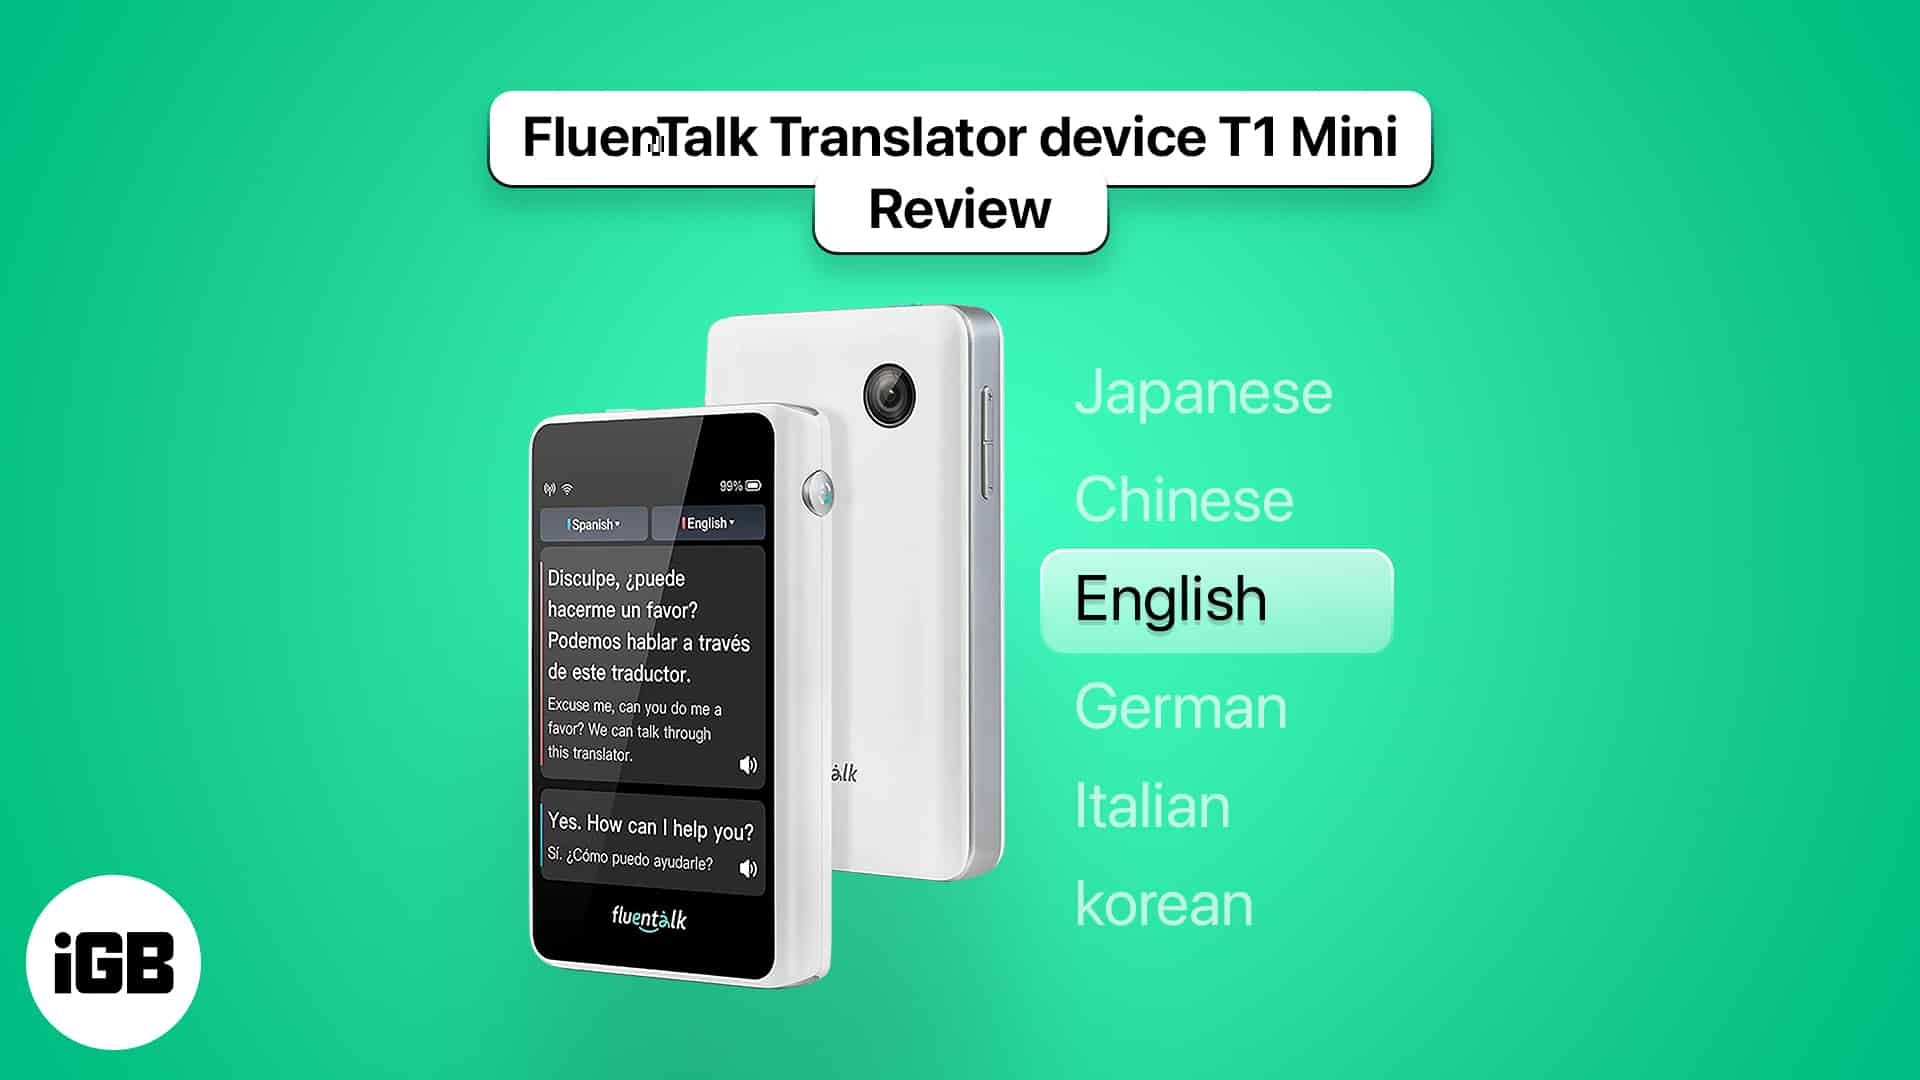 Detailed review on fluentalk translator device t1 mini